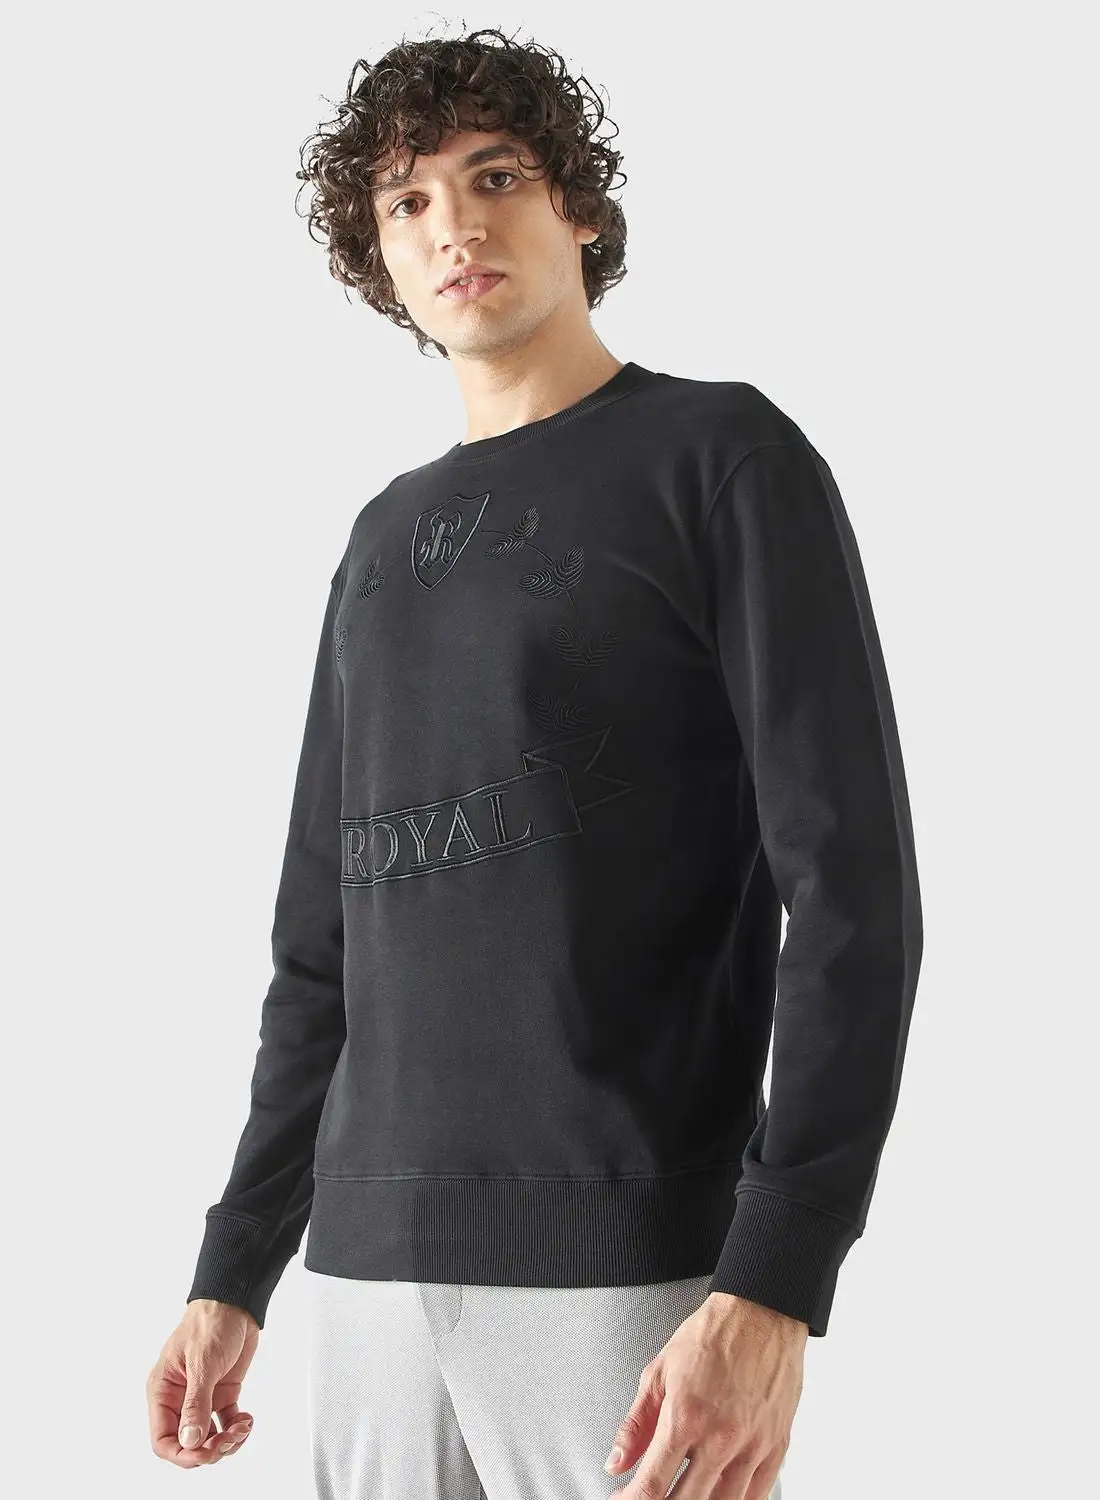 Iconic Textured Crew Neck Sweatshirt